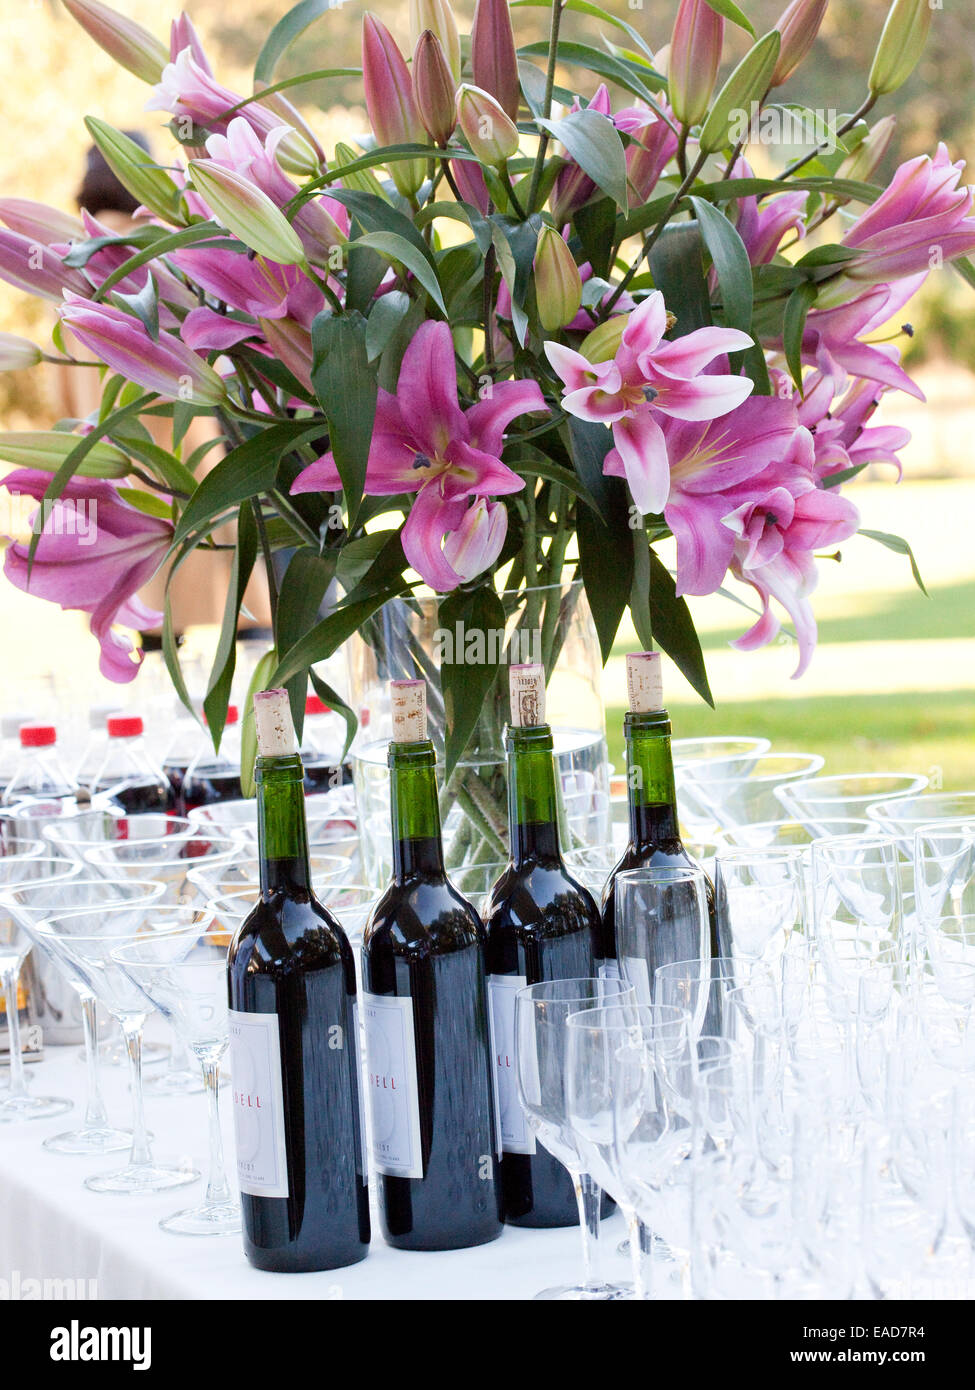 La tabella all'aperto in giardino con lillys, vino e bicchieri di vino Foto Stock